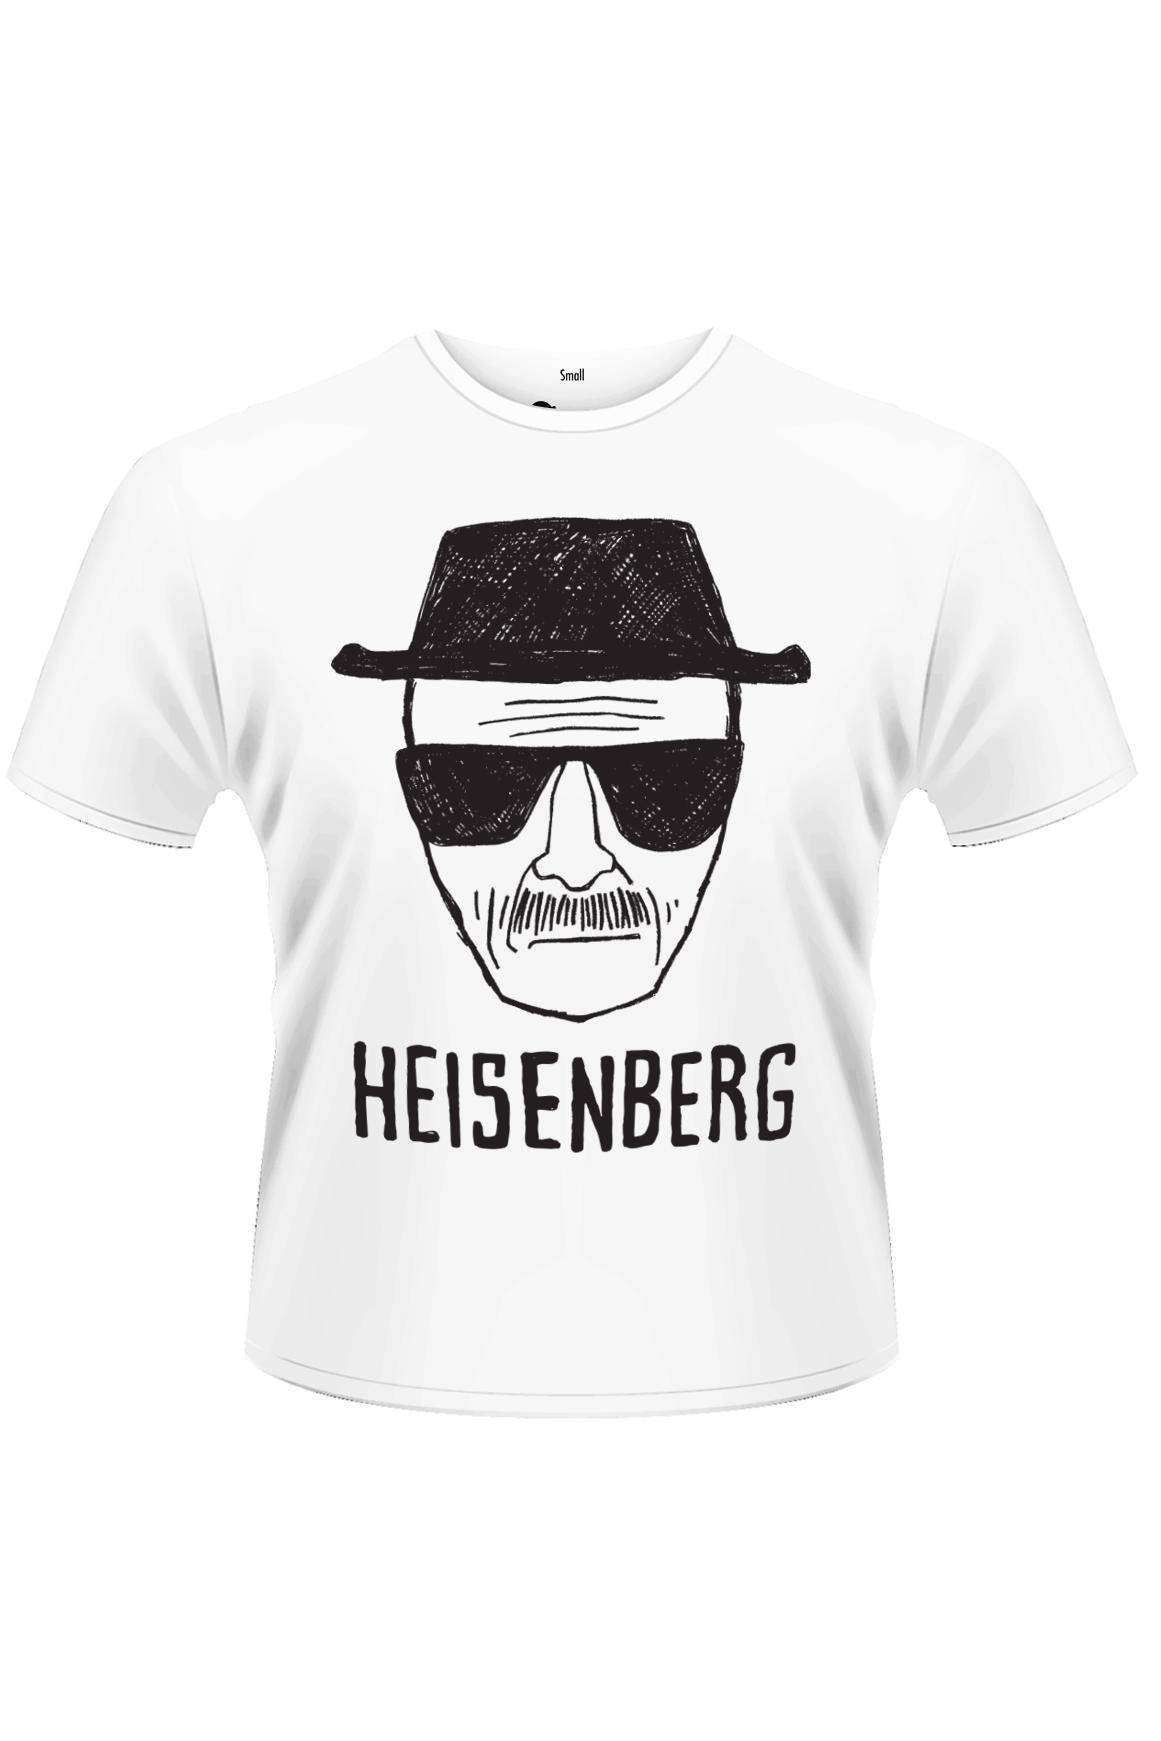 Tricou alb pentru barbati: Breaking Bad - Heisenberg Sketch, eMAG.ro